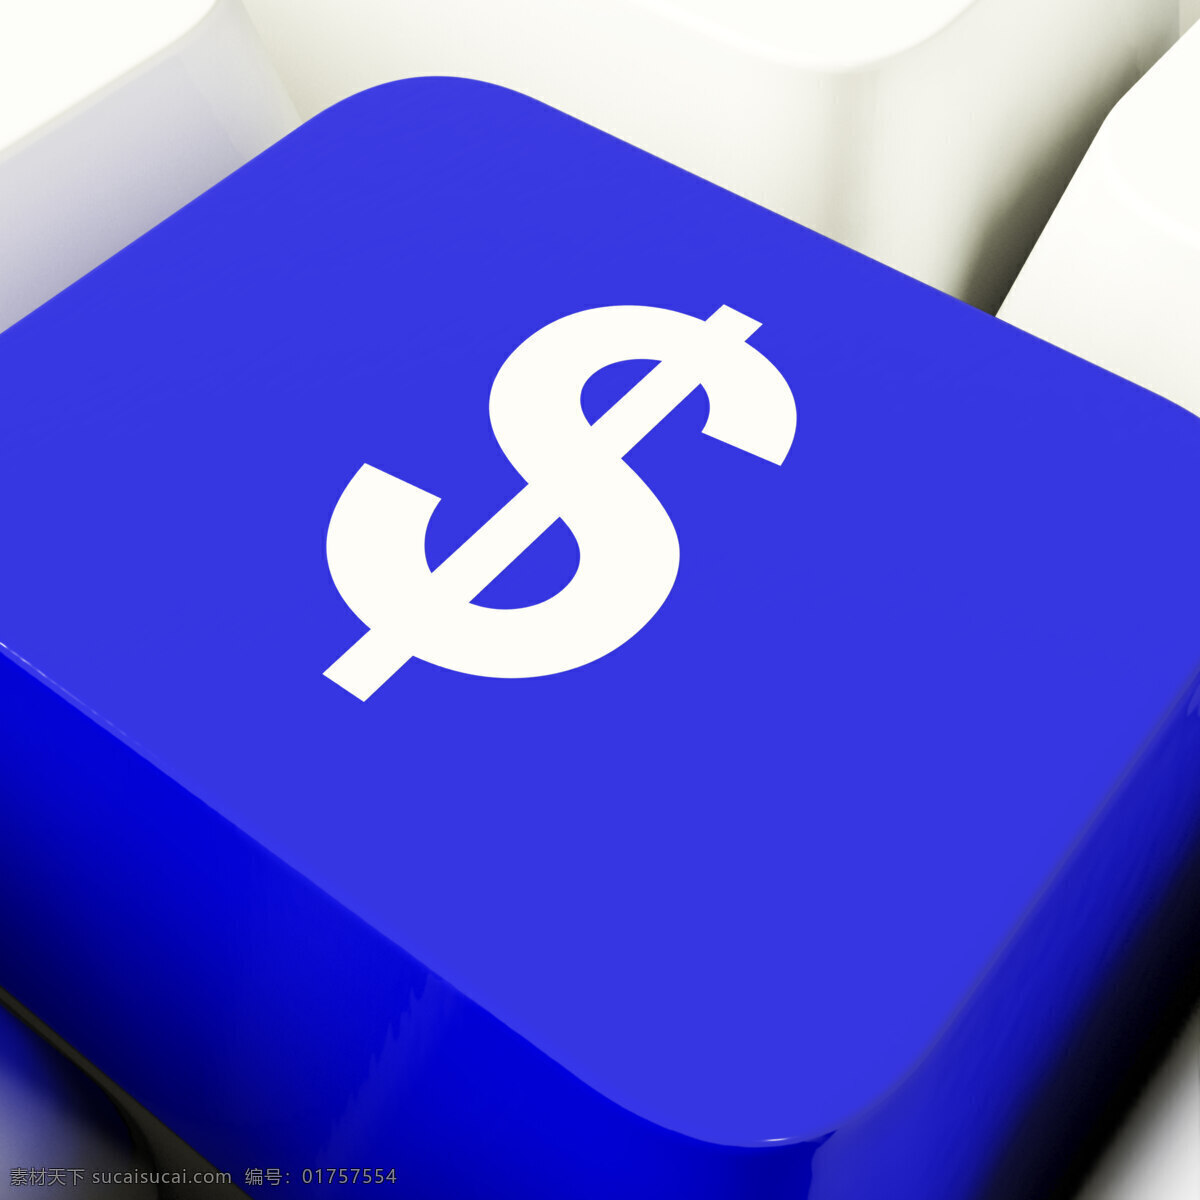 美元 符号 中 电脑 钥匙 蓝色 显示 资金 投资 商务金融